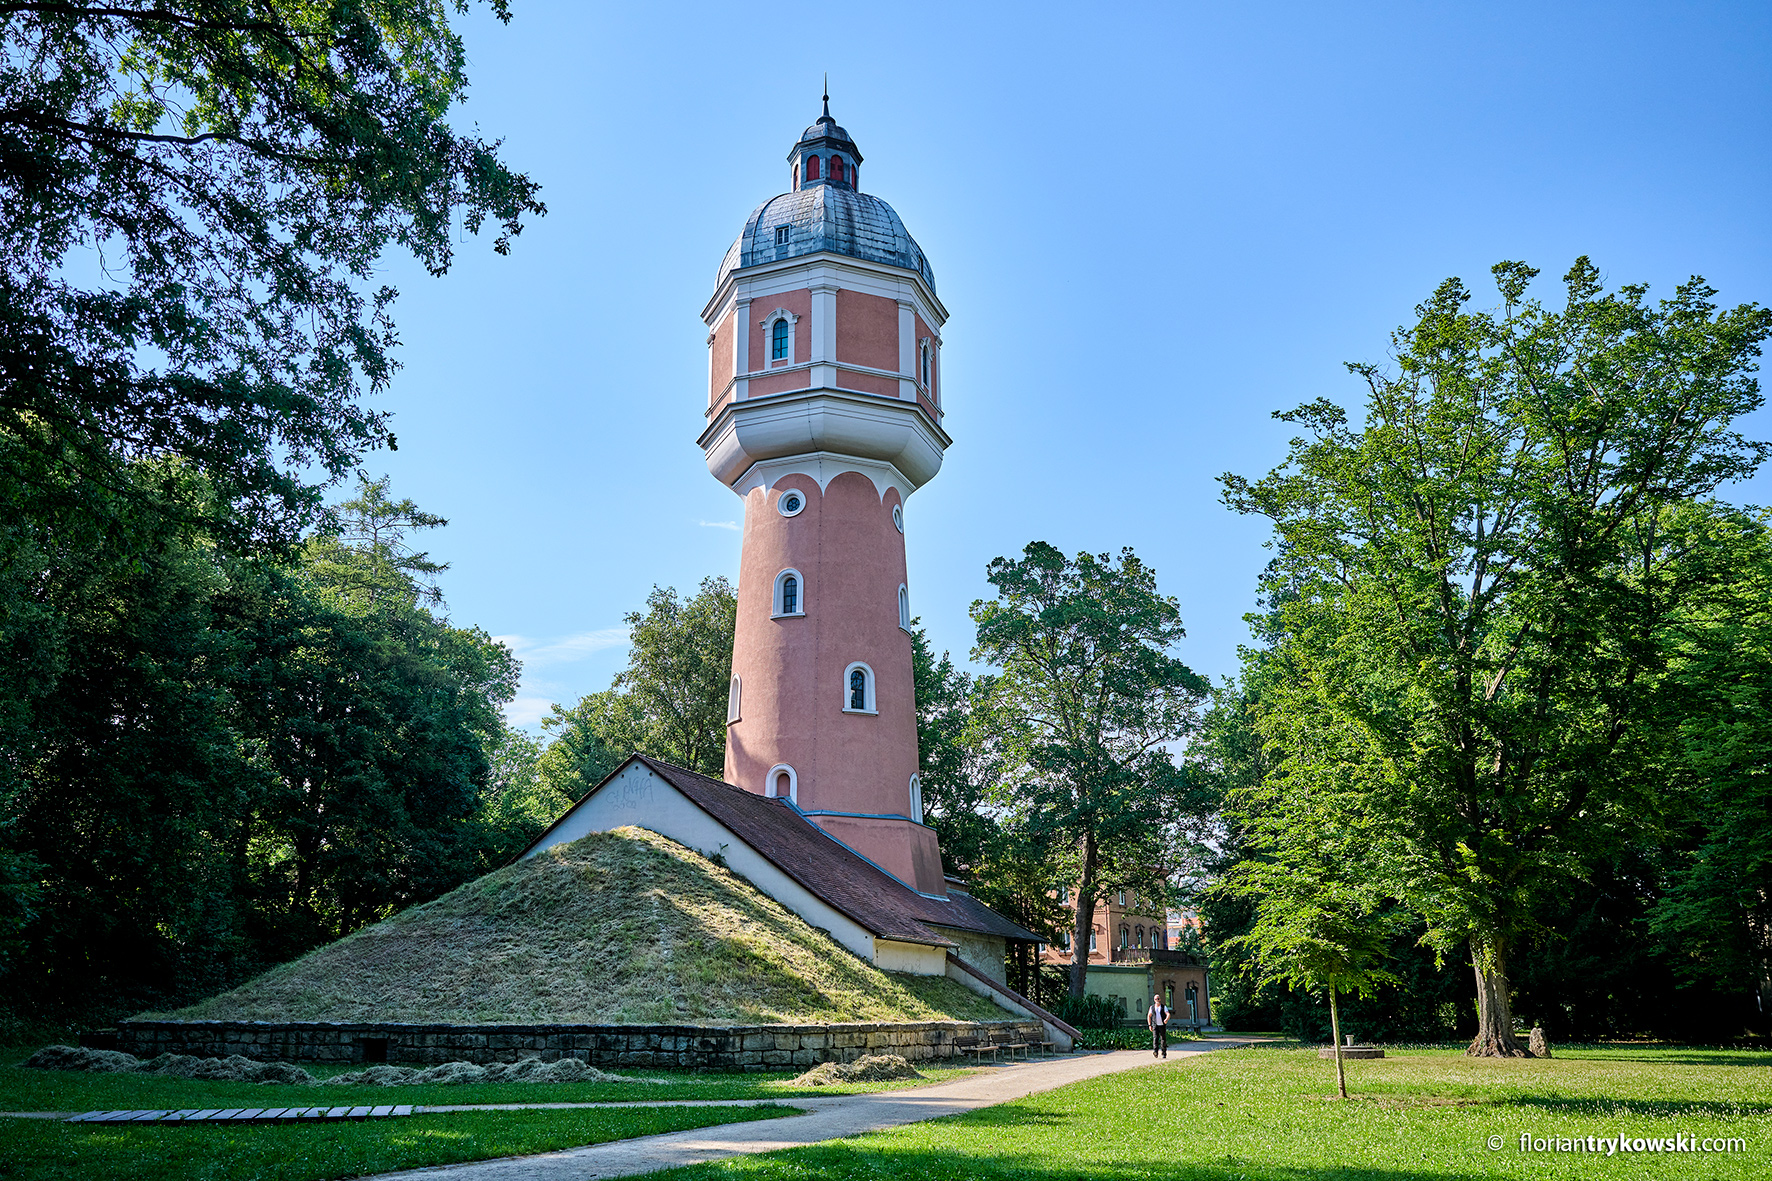 Wasserturm Neu-Ulm